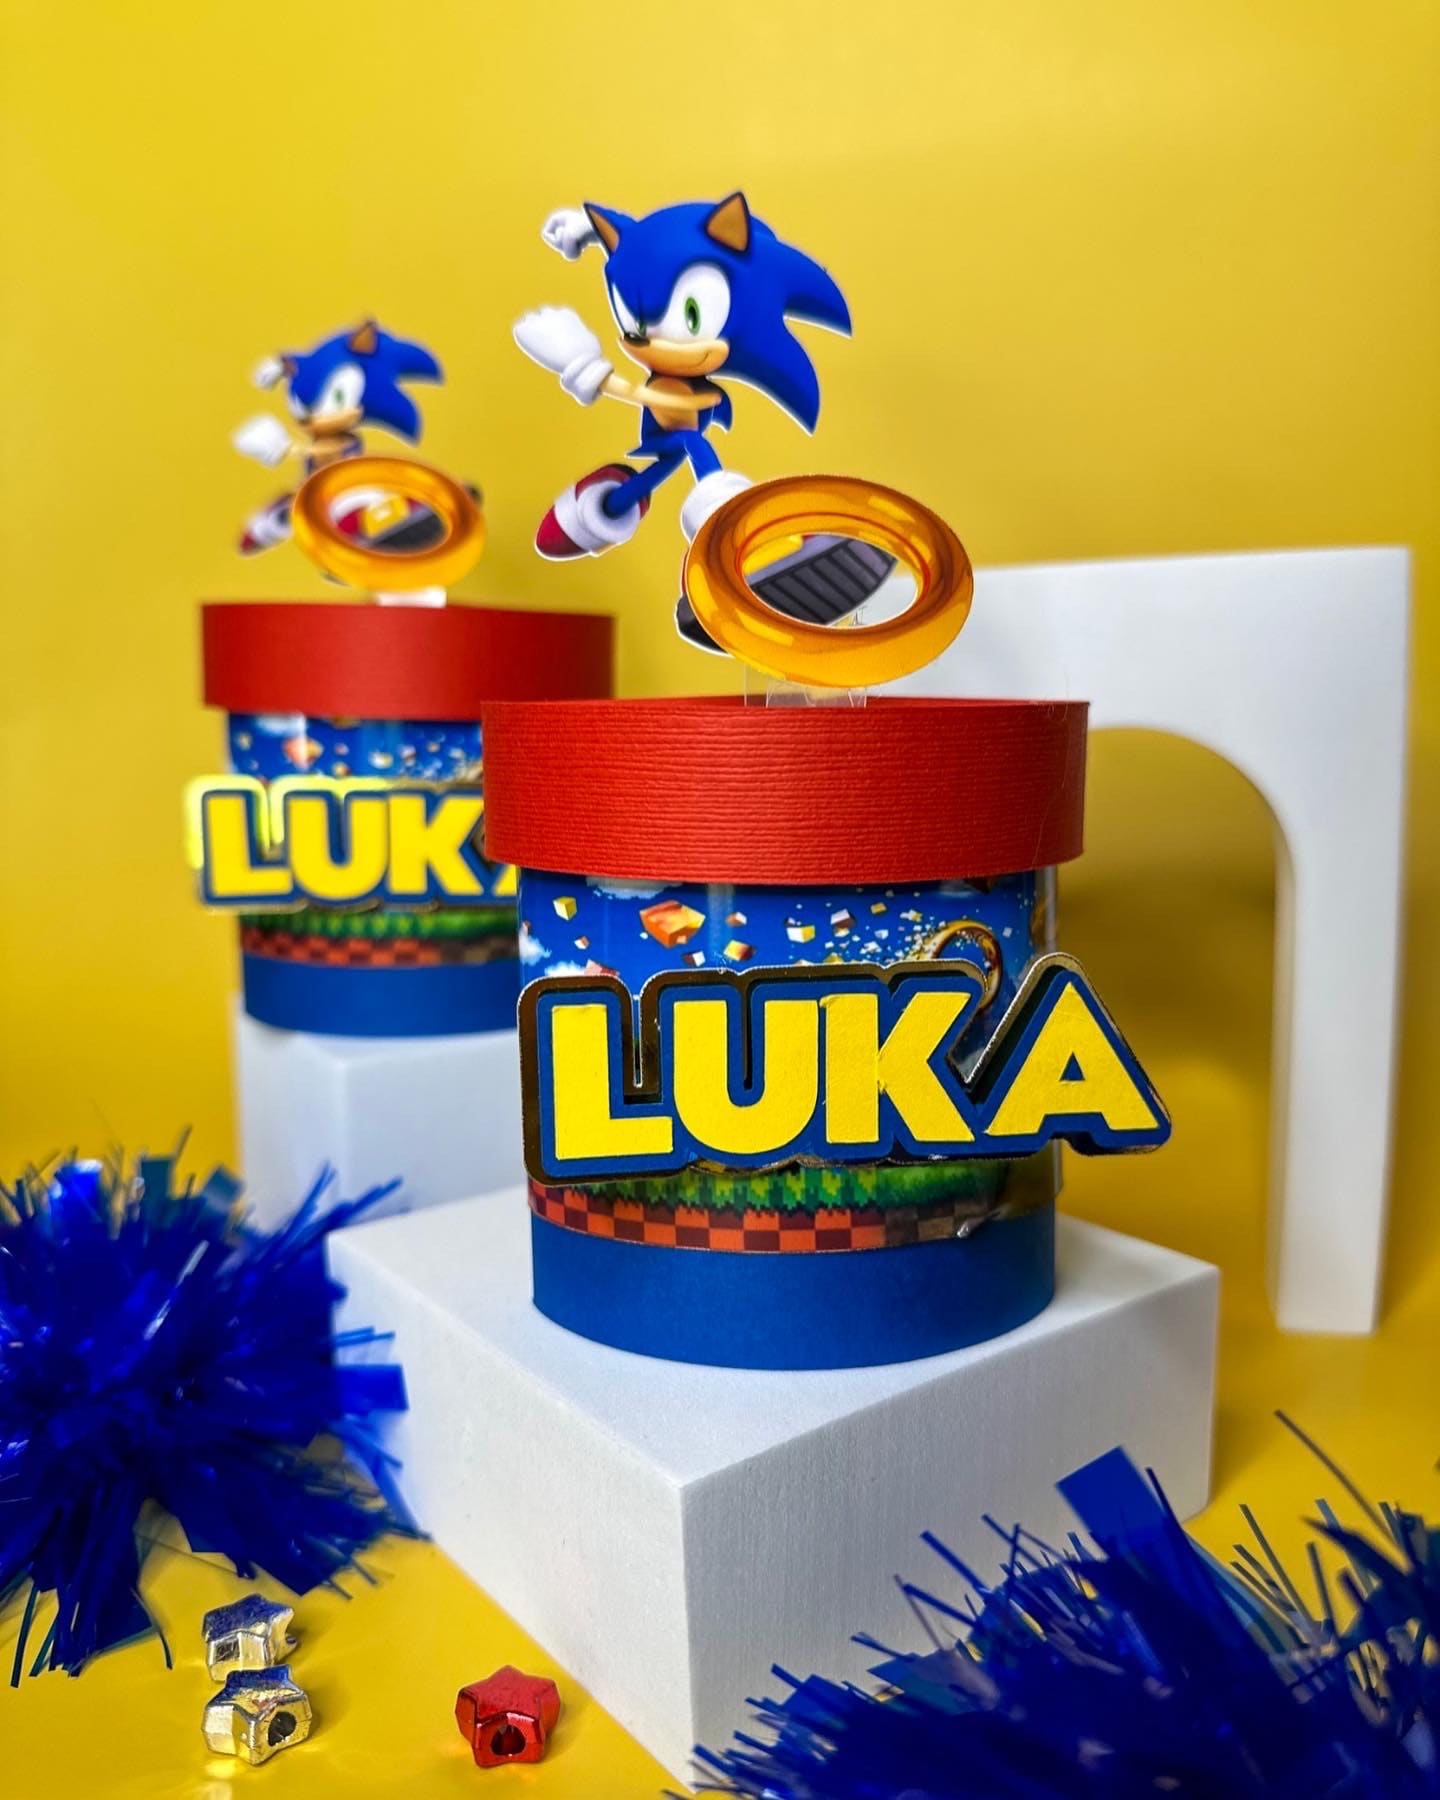 Bolsa Cono Chuches de Sonic (10)✔️ por sólo 1,35 €. Envío en 24h. Tienda  Online. . ✓. Artículos de decoración para  Fiestas.